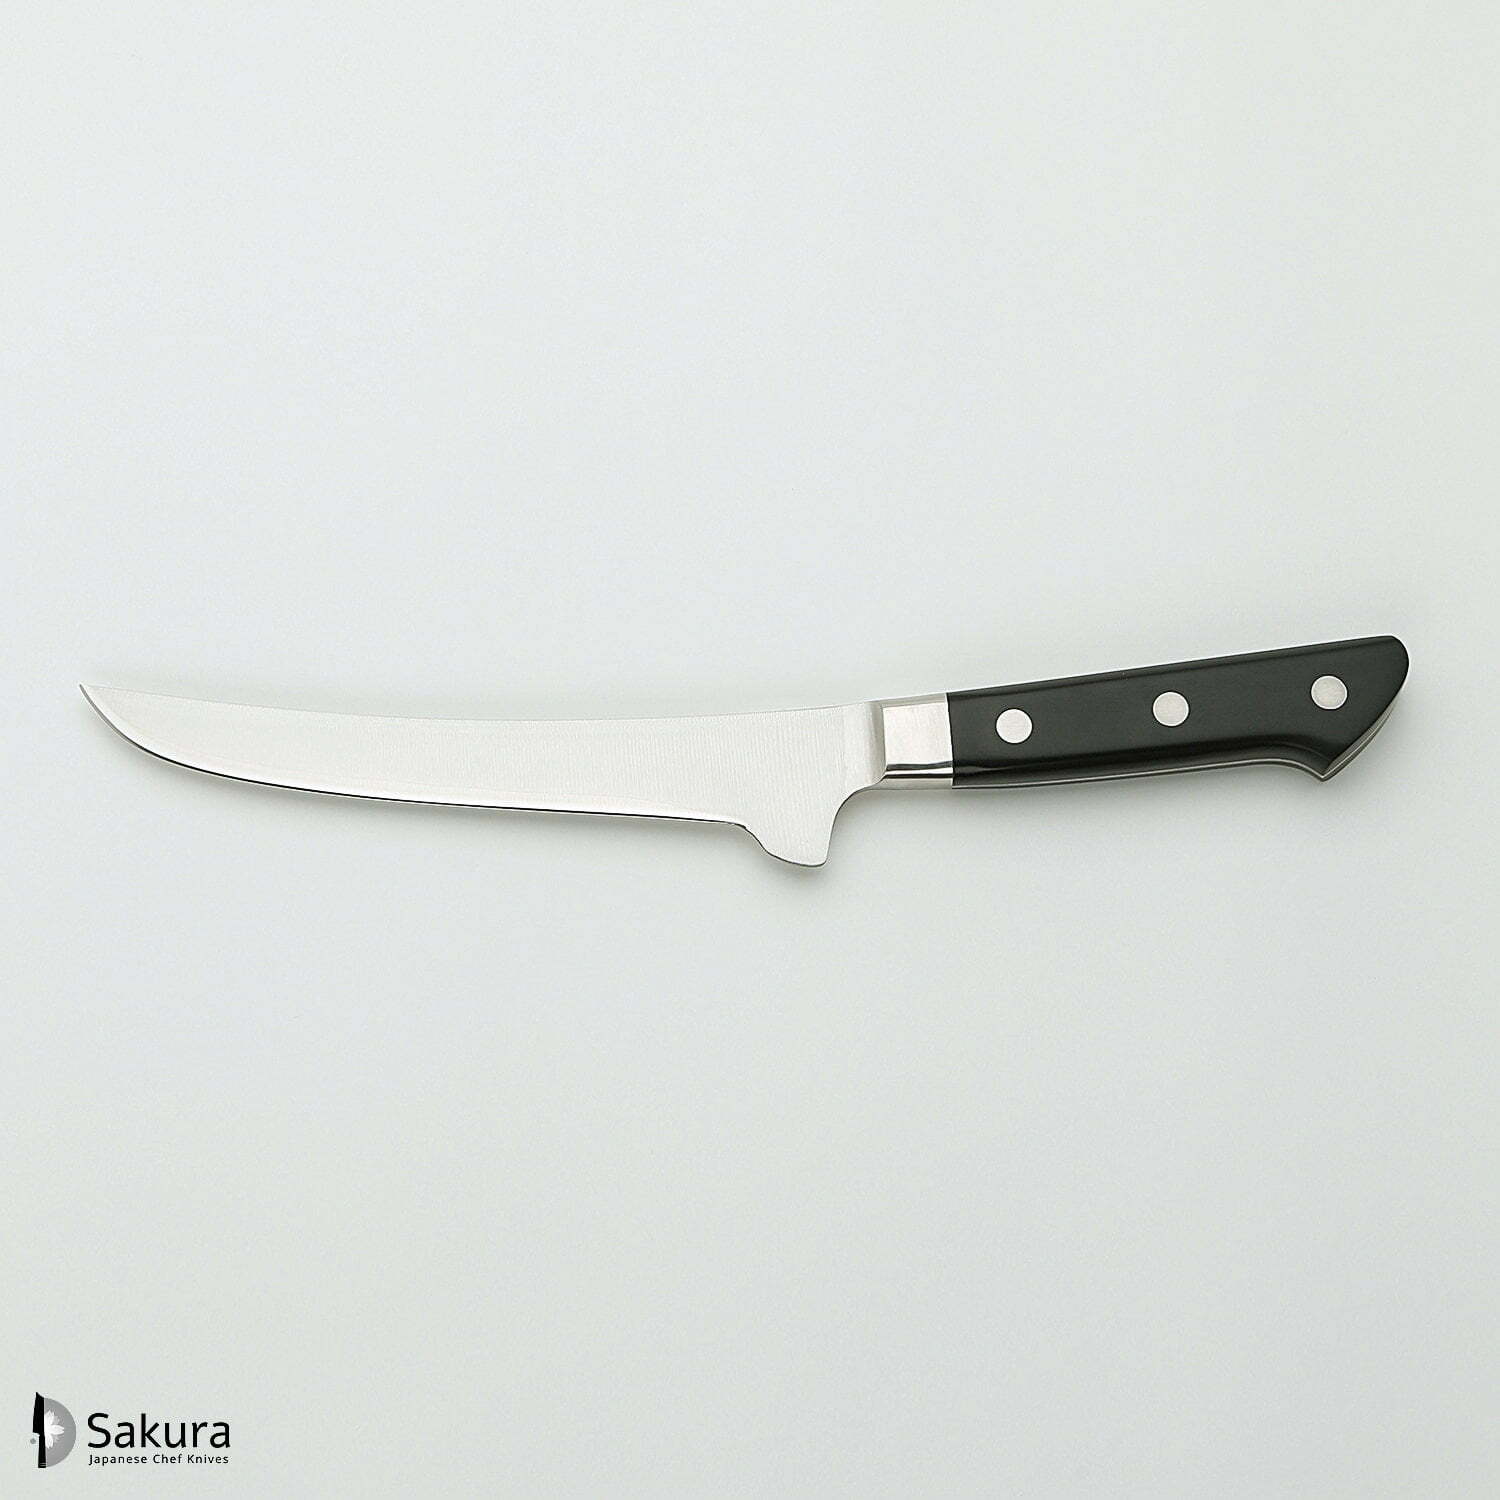 סכין פירוק/קיצוב בשר 150מ״מ מחוזקת 3 שכבות: פלדת פחמן יפנית VG-10 עטופה פלדת אל-חלד גימור מט מלוטש טוג׳ירו יפן